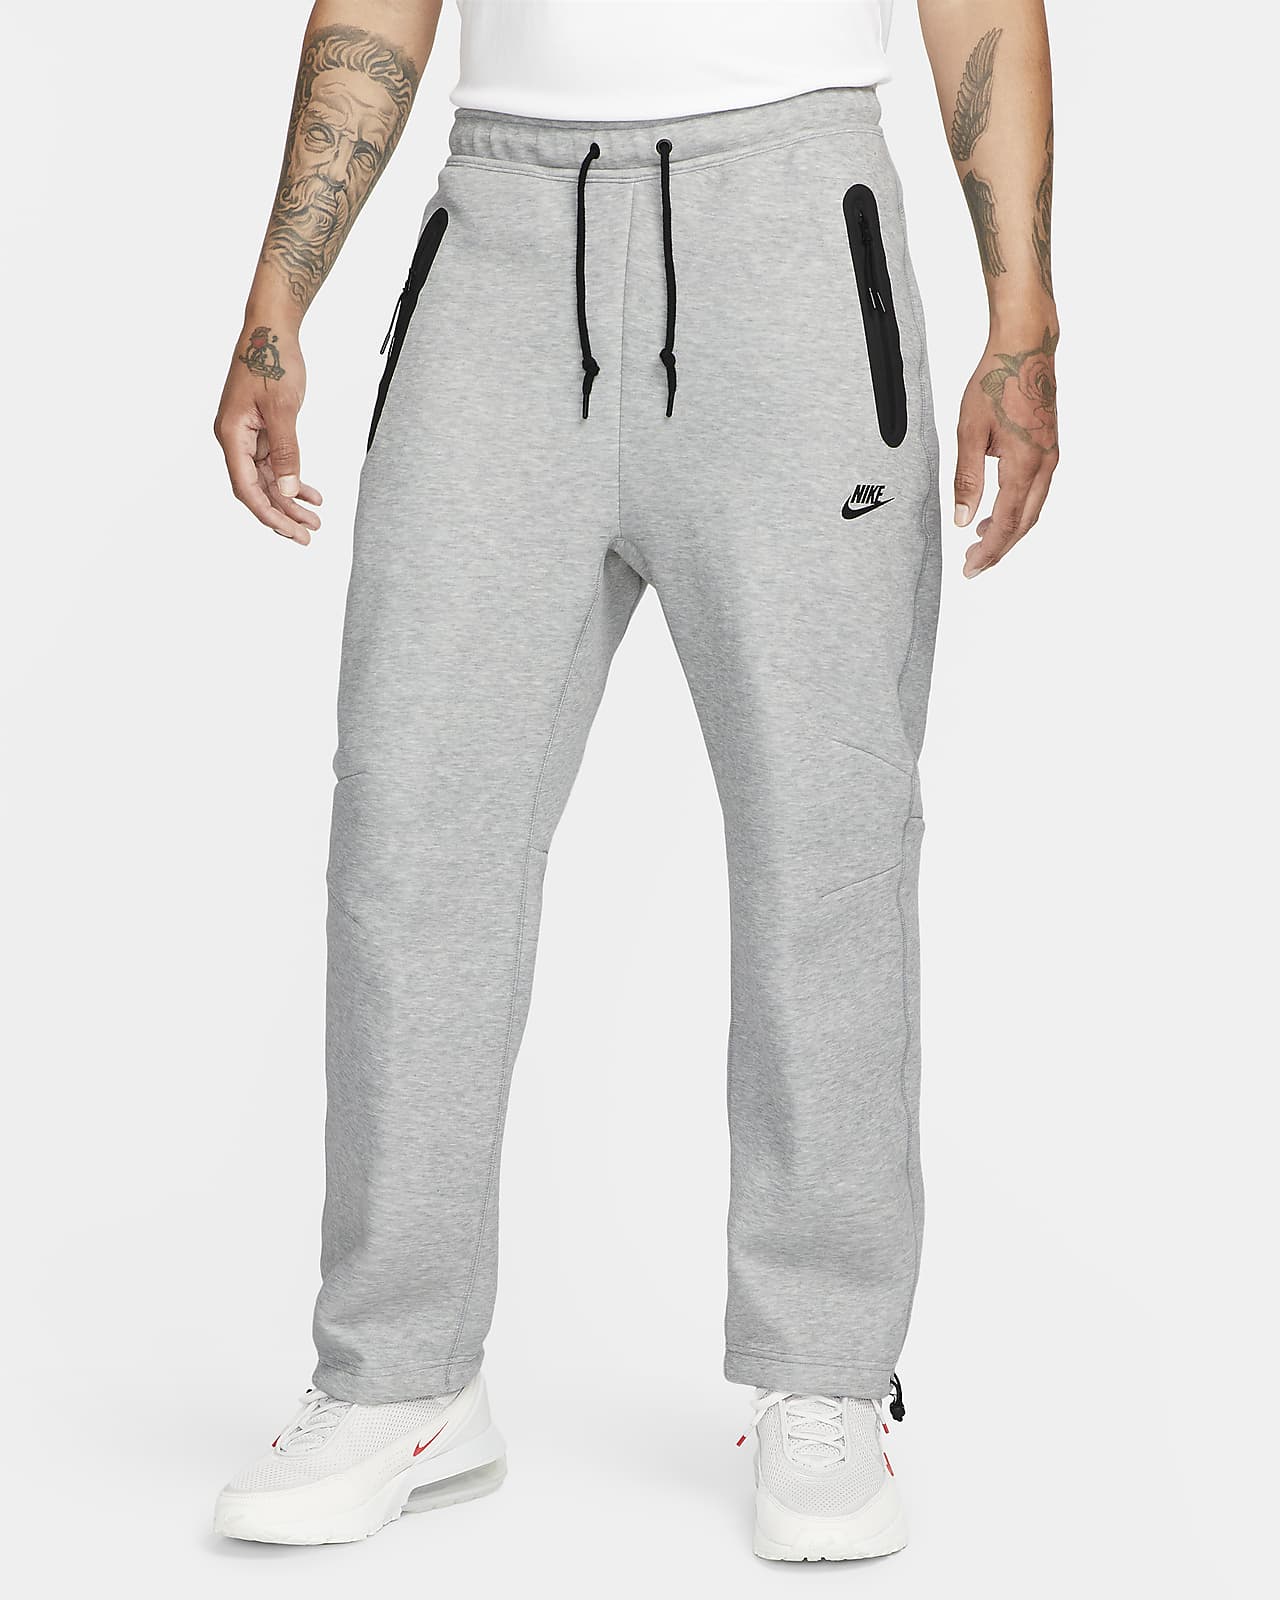 Nike Sportswear Tech Fleece Pantalons de xandall amb vora oberta - Home